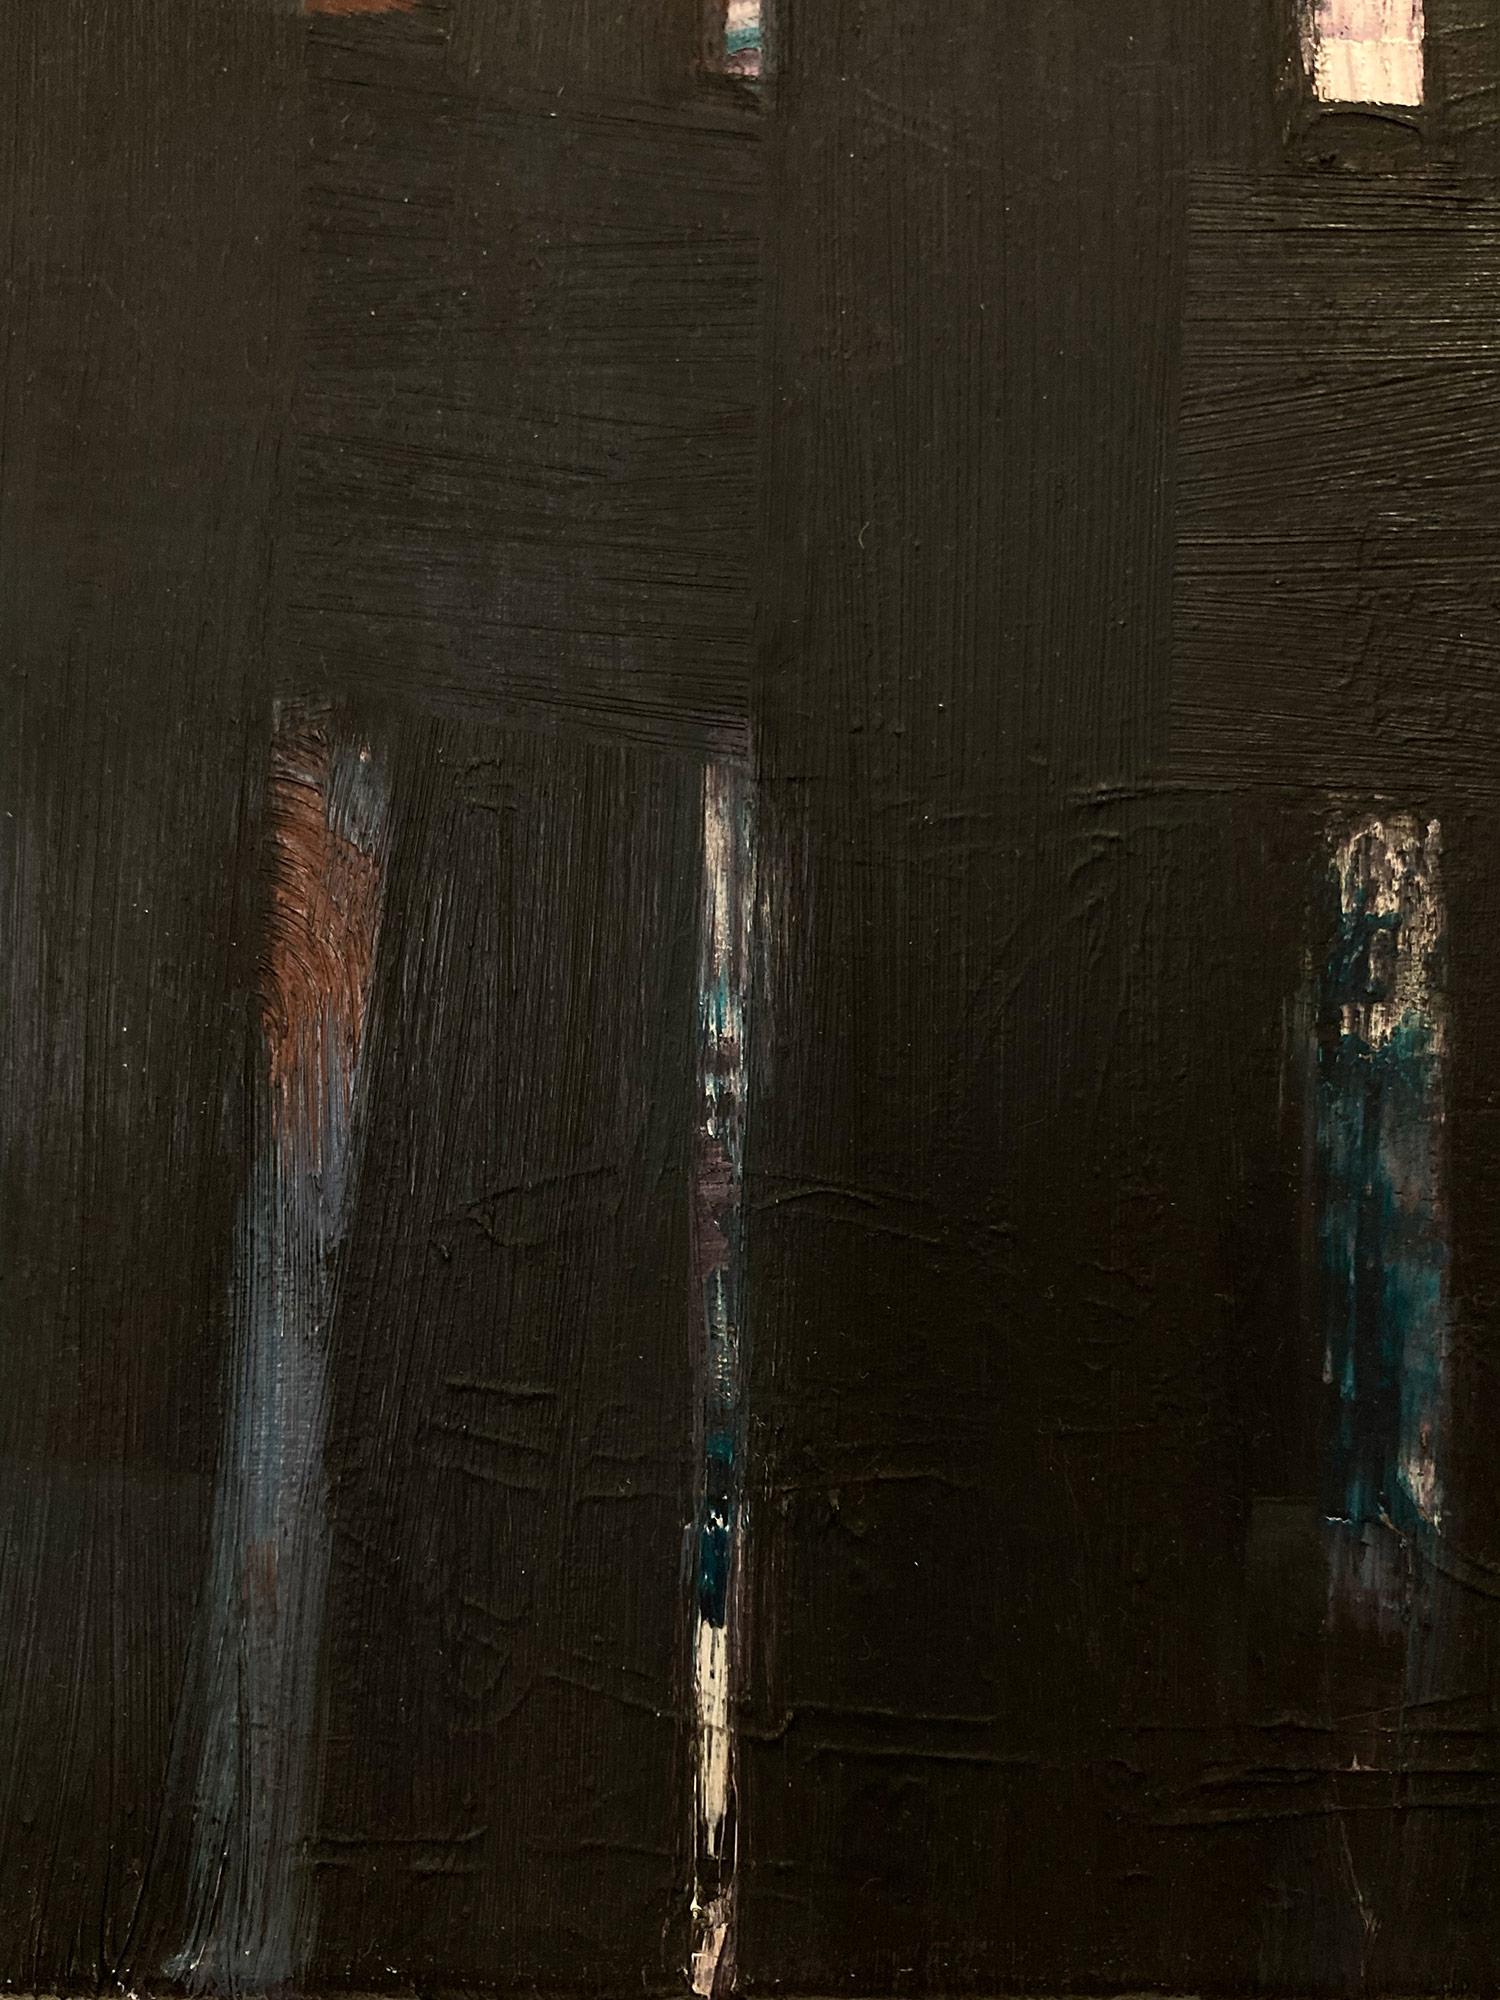 Dieses Stück ist eine kühne Darstellung von Eozen Agopians strukturell starken Stücken, mit einer intensiven Farbe von Schwarz und Knalleffekten von Blau, Rot und Weiß, imitiert Gefühle aus der Mitte des Jahrhunderts mit der Verwendung von Ölmalerei